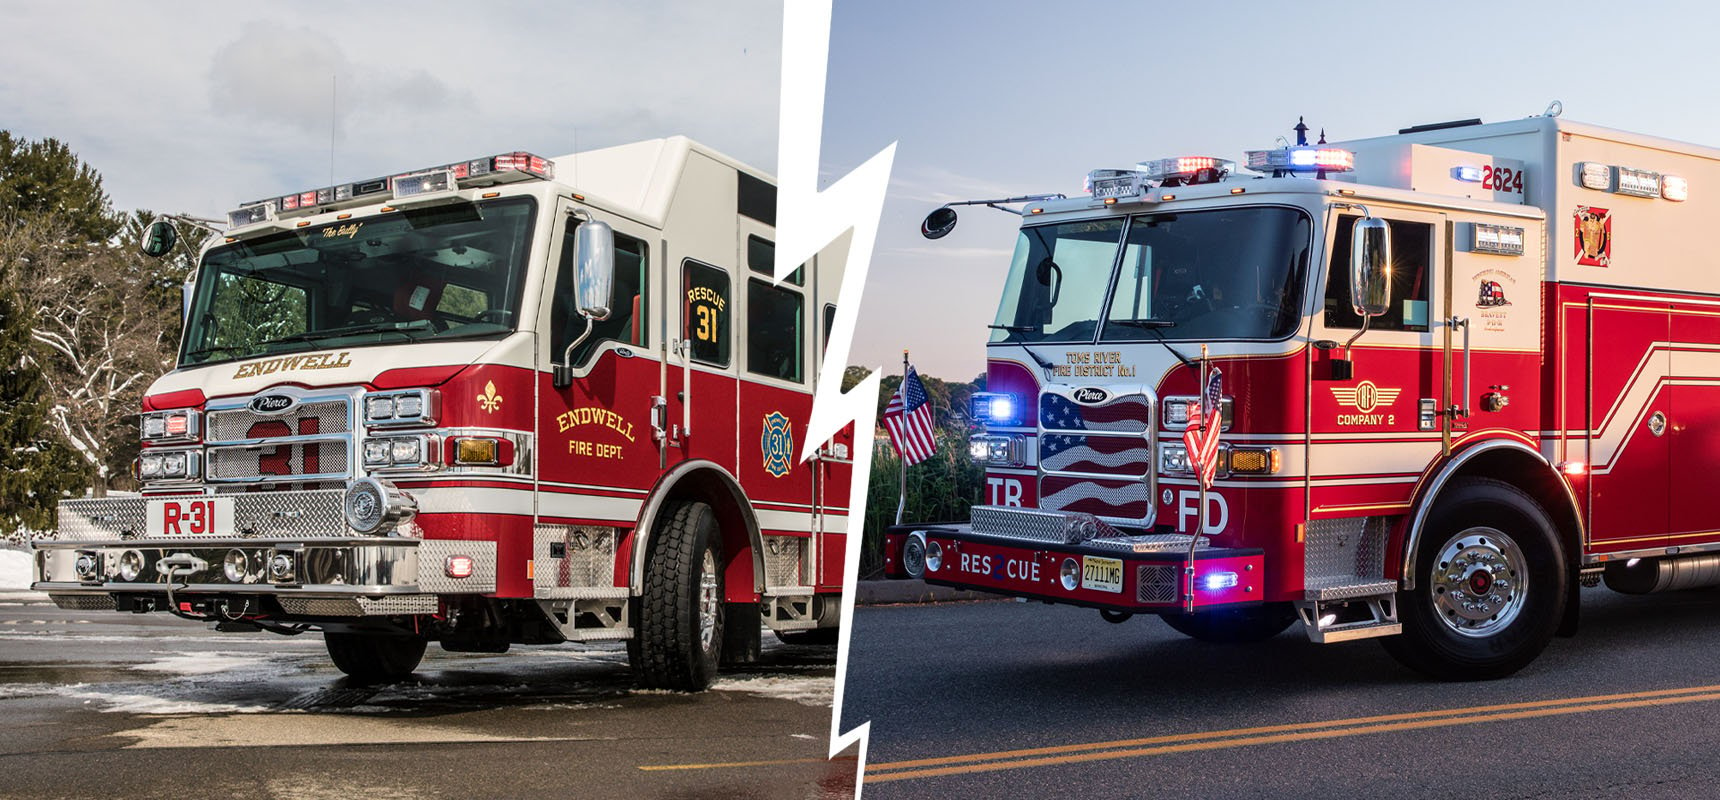 A comparison graphic shows a walk-in fire truck and a non-walk-in fire truck side-by-side. 